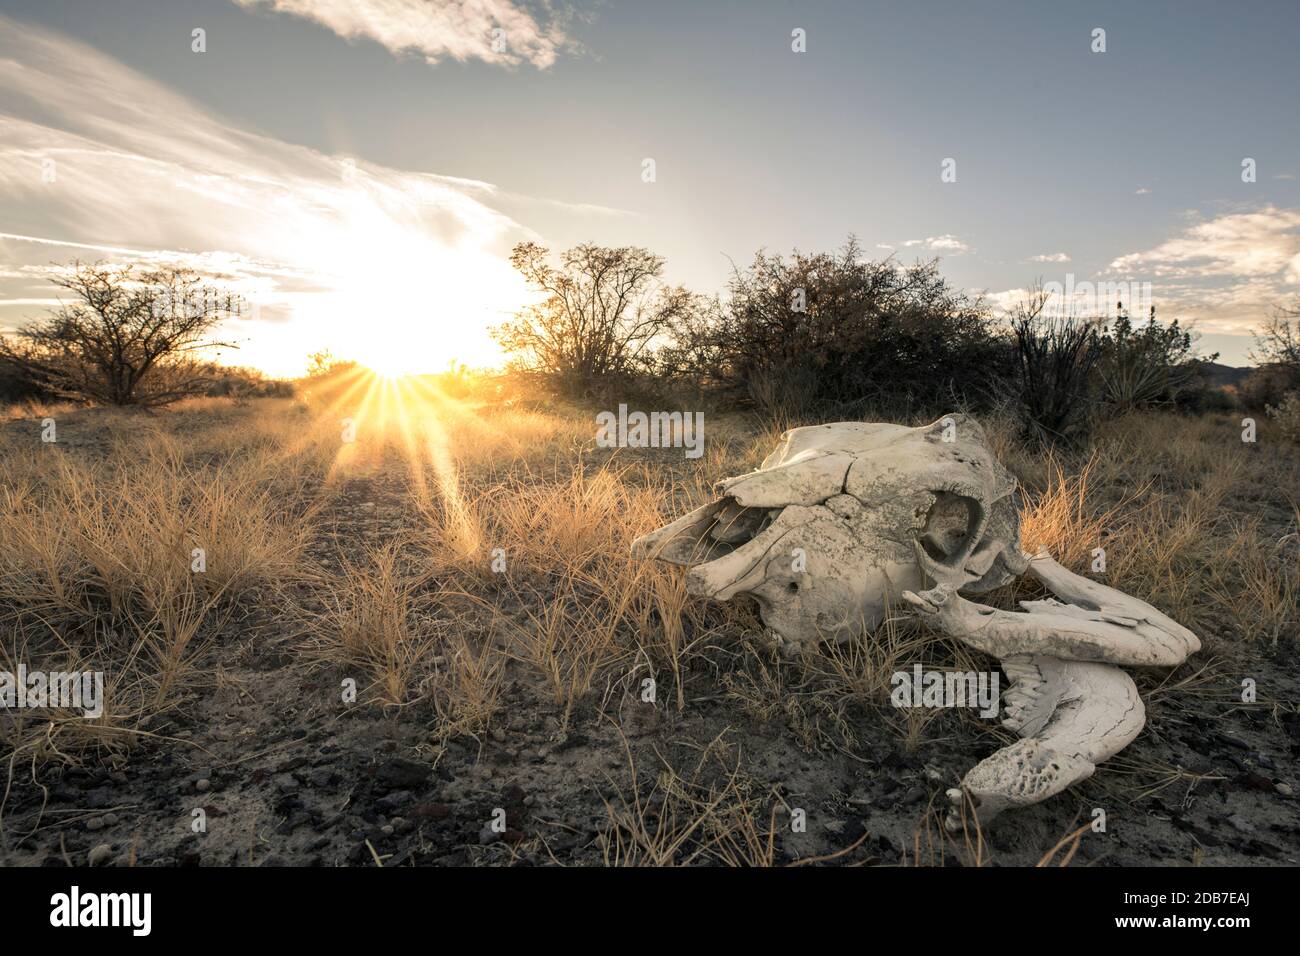 Cow skull in desert, Gerlach, Nevada, USA Stock Photo